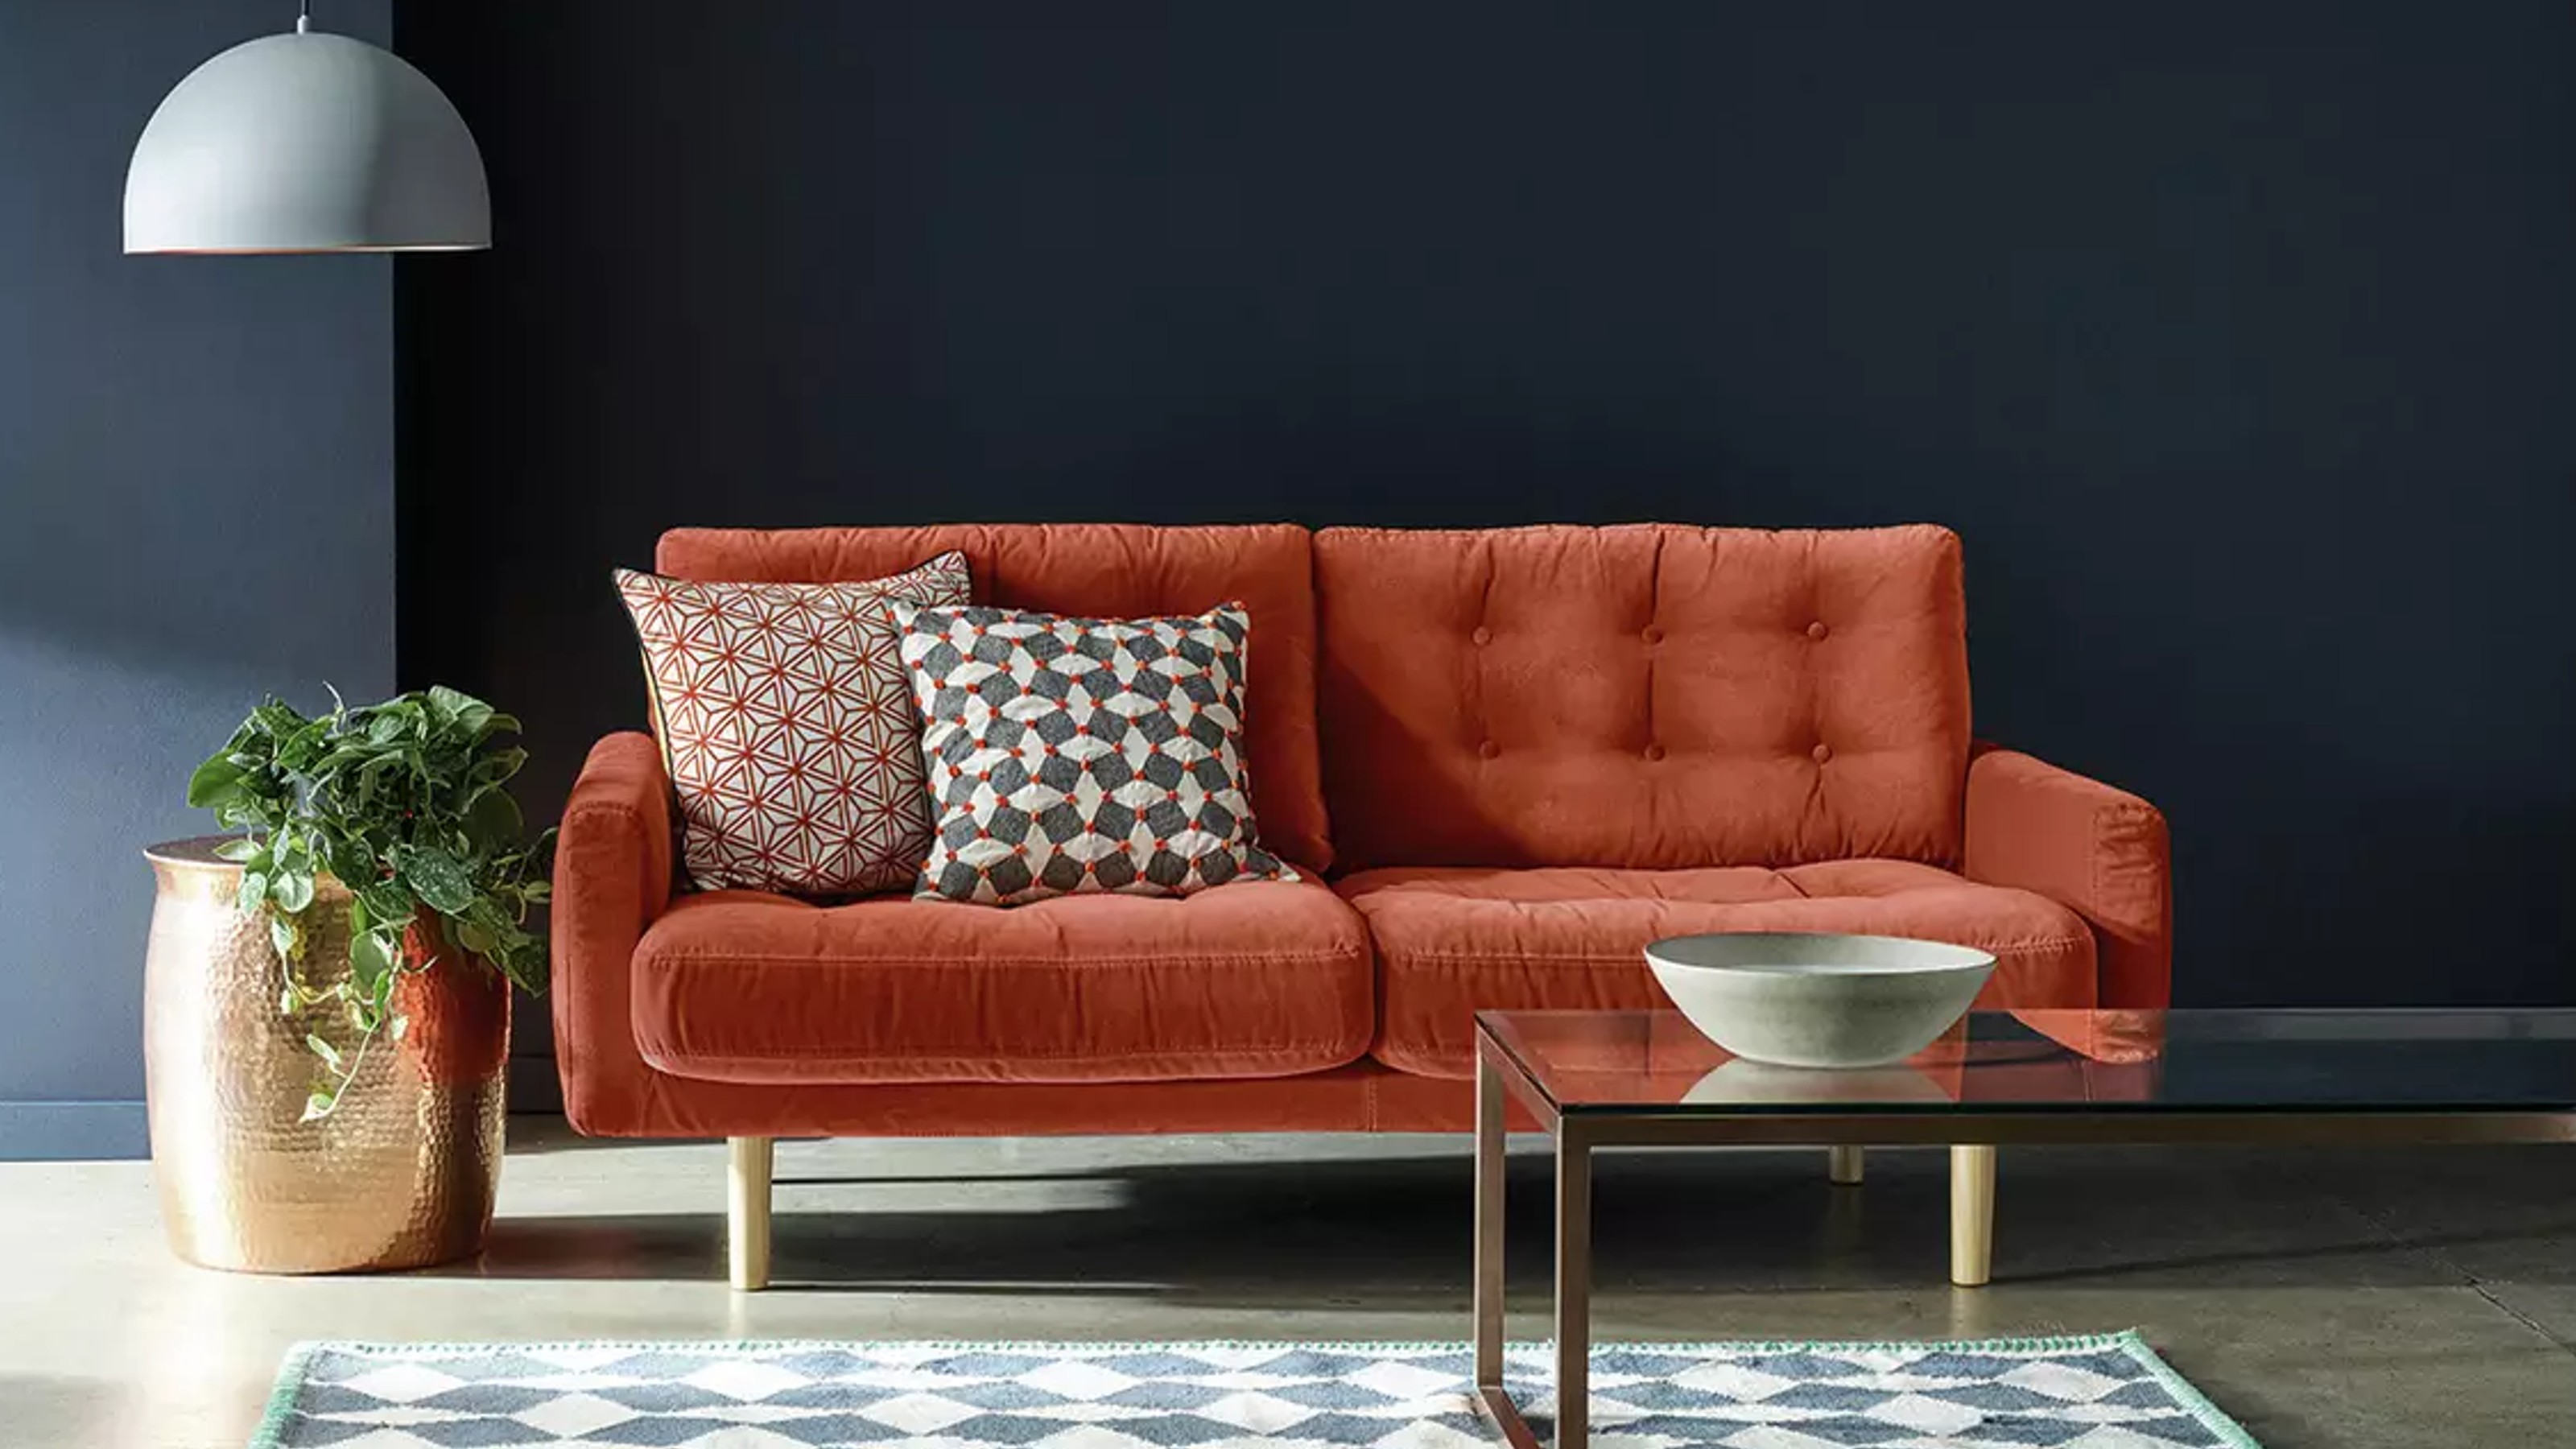 New Argos Sofa Deals Reduced Some Of